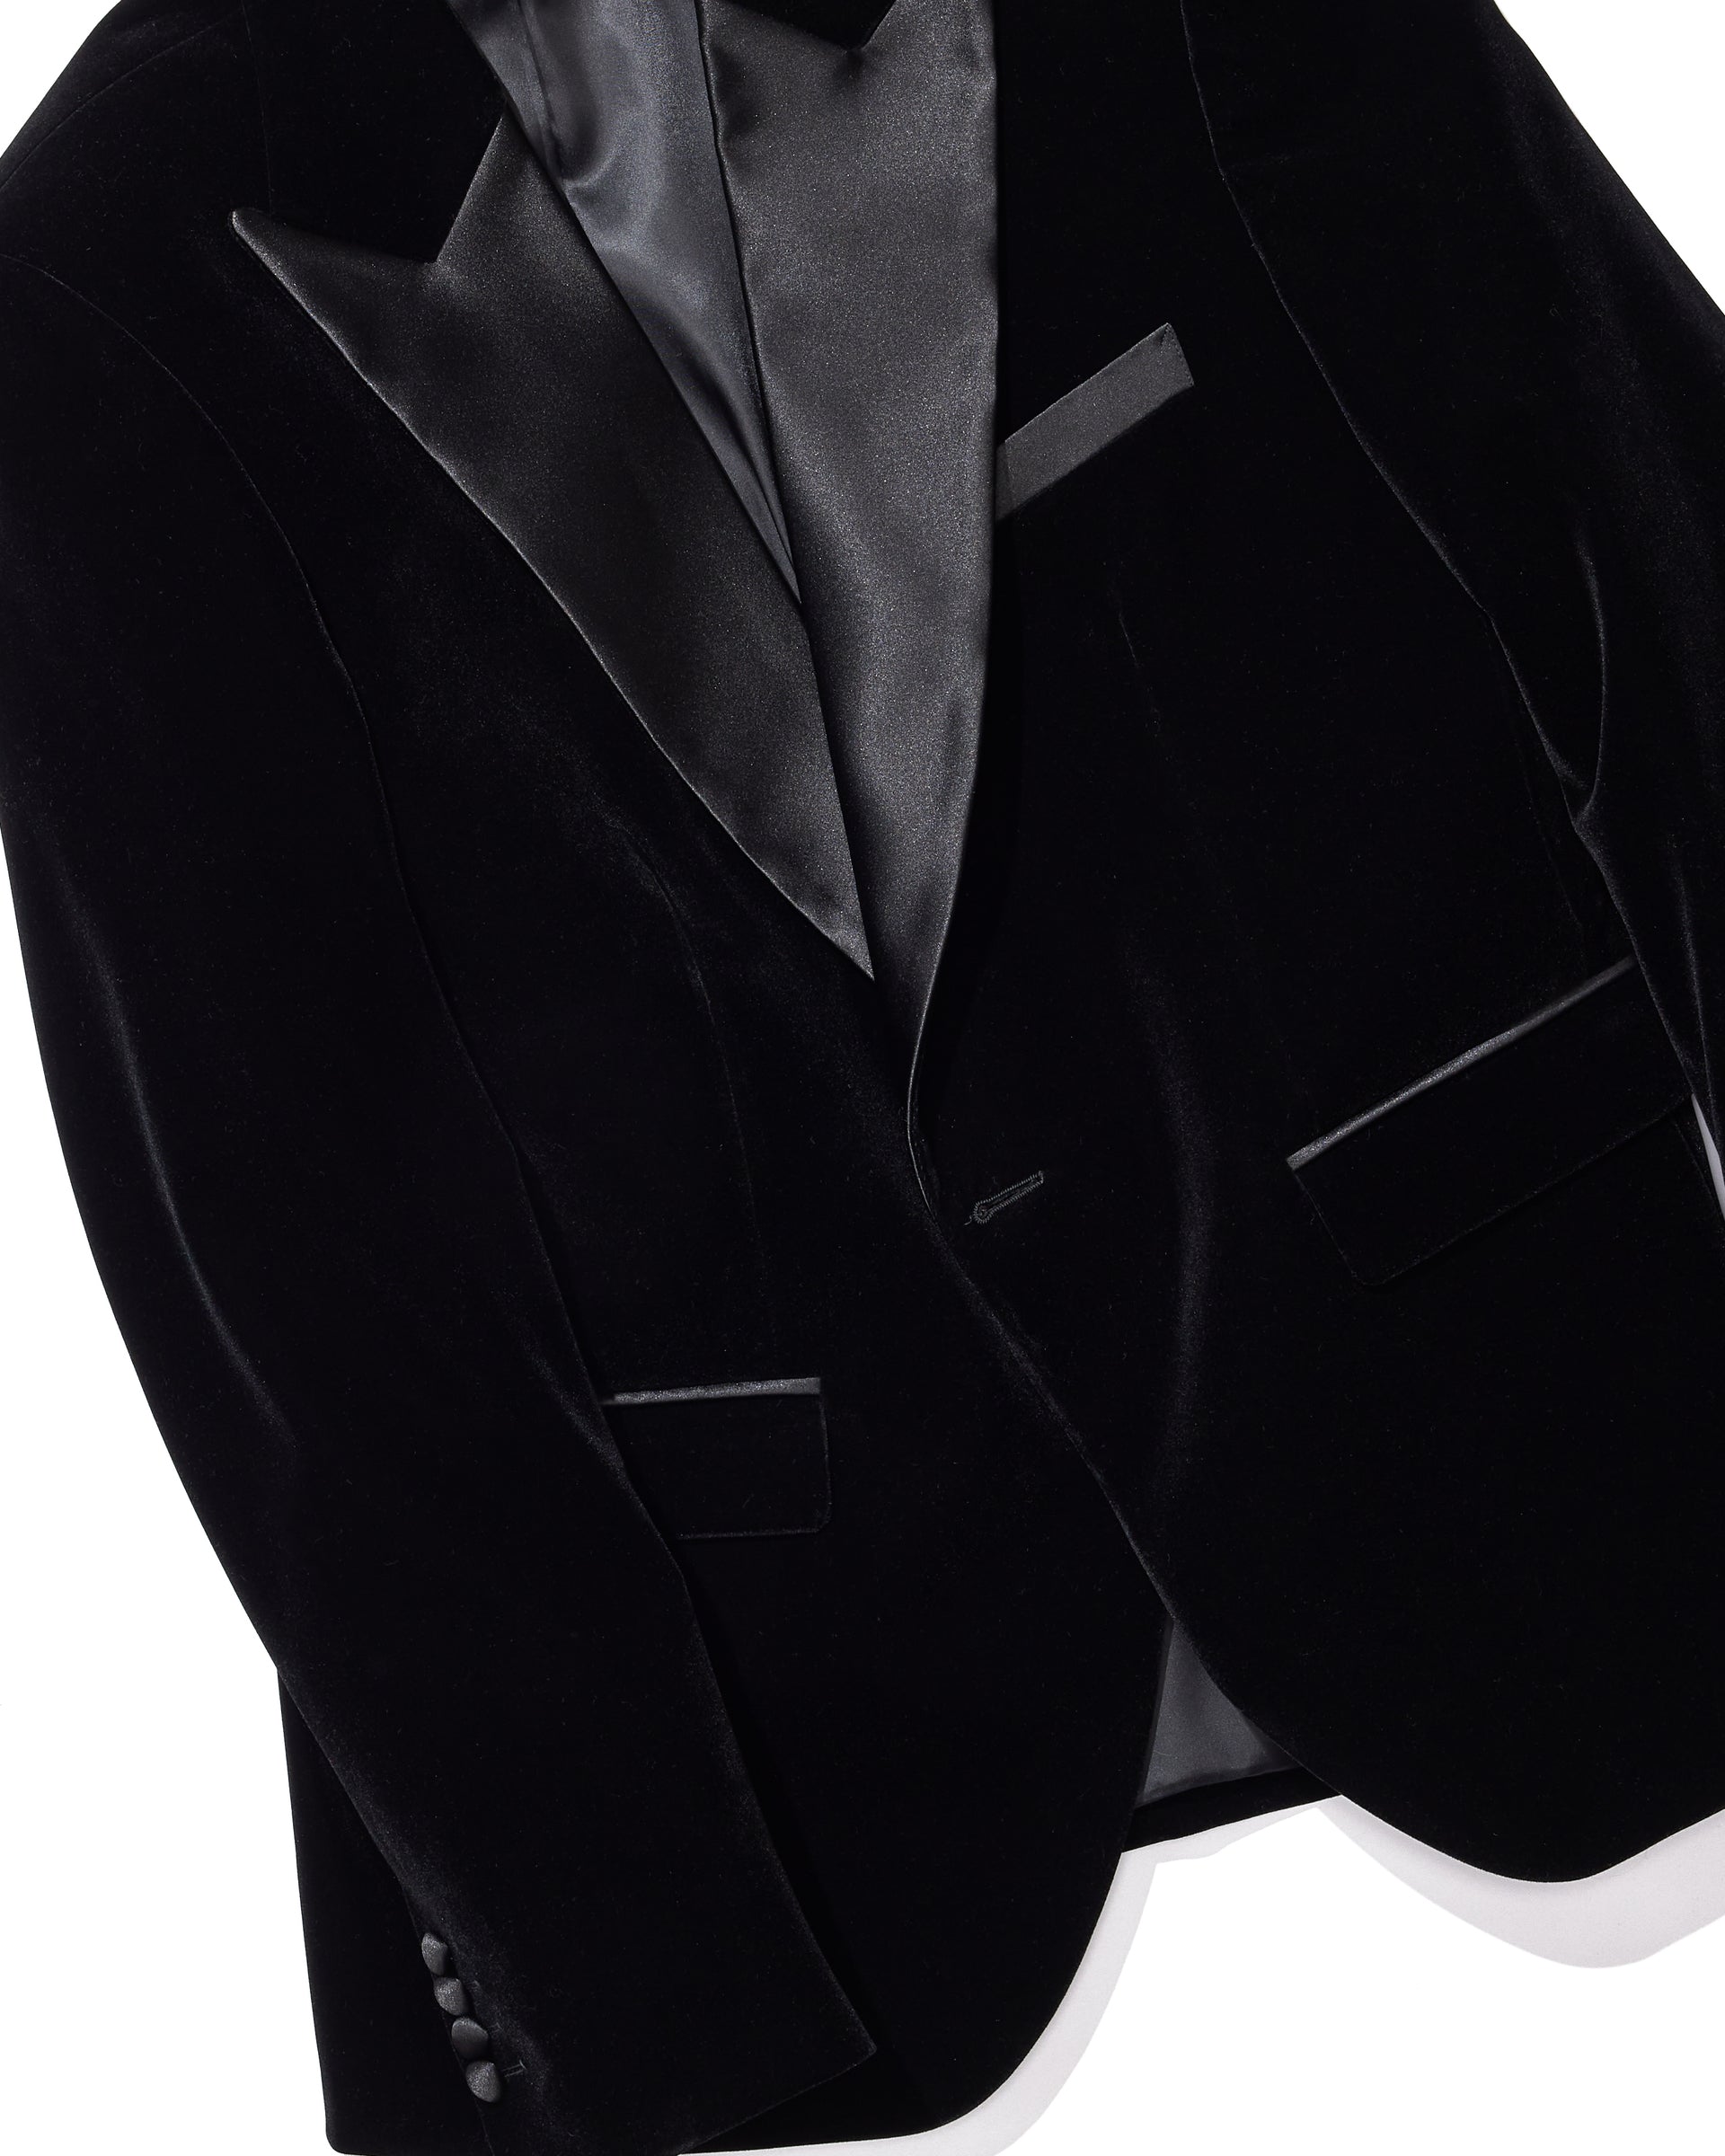 Pearl Wedding Suits Peak Lapel Blazer for Men Black Velvet Formal